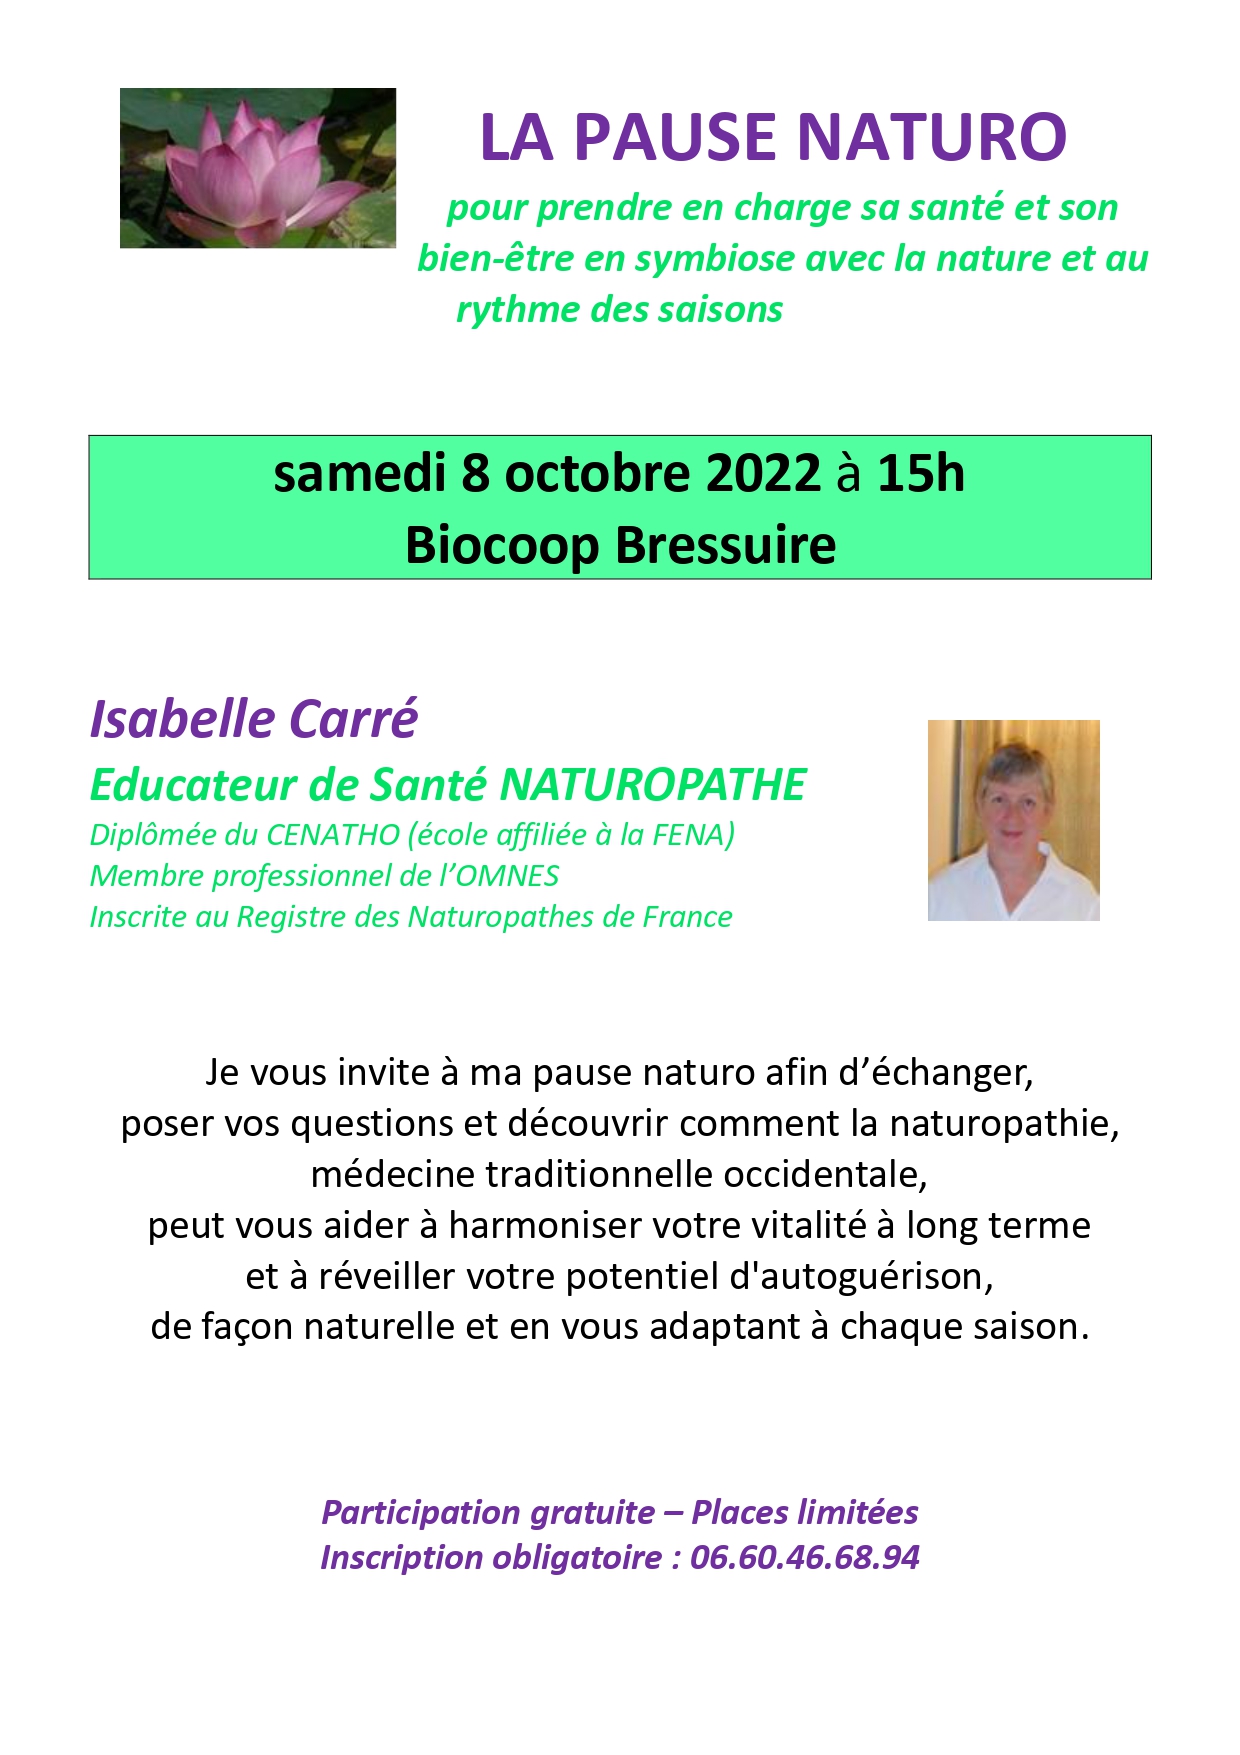 Samedi 8 octobre : pause naturo avec Isabelle Carré